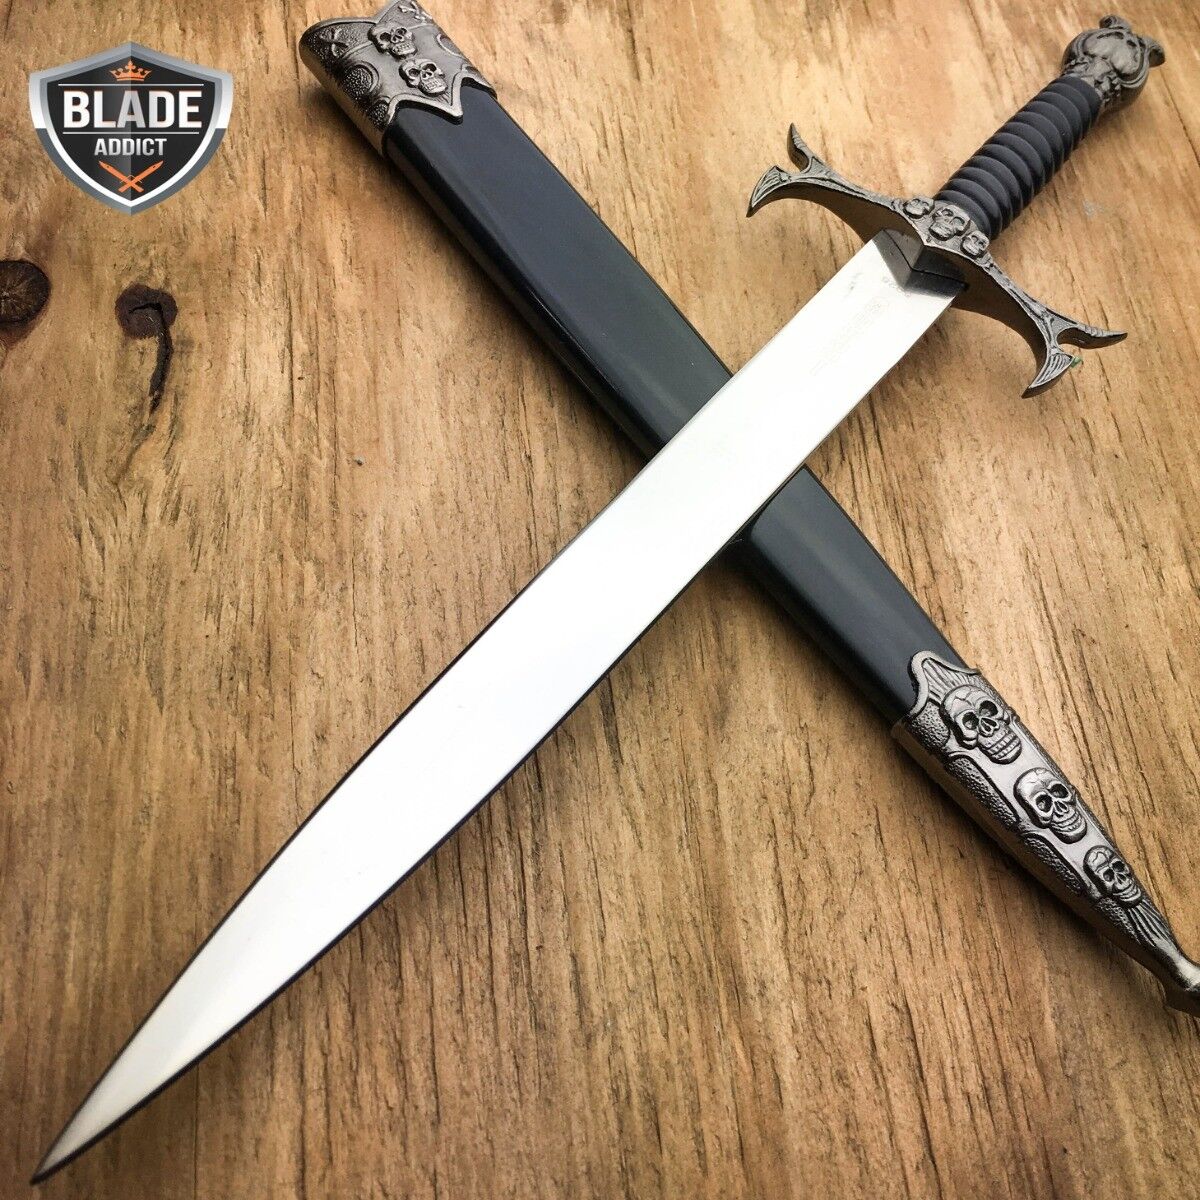 DEMON SKULL BONES MEDIEVAL TRIBAL FANTASY DAGGER Historical Short Sword KNIFE